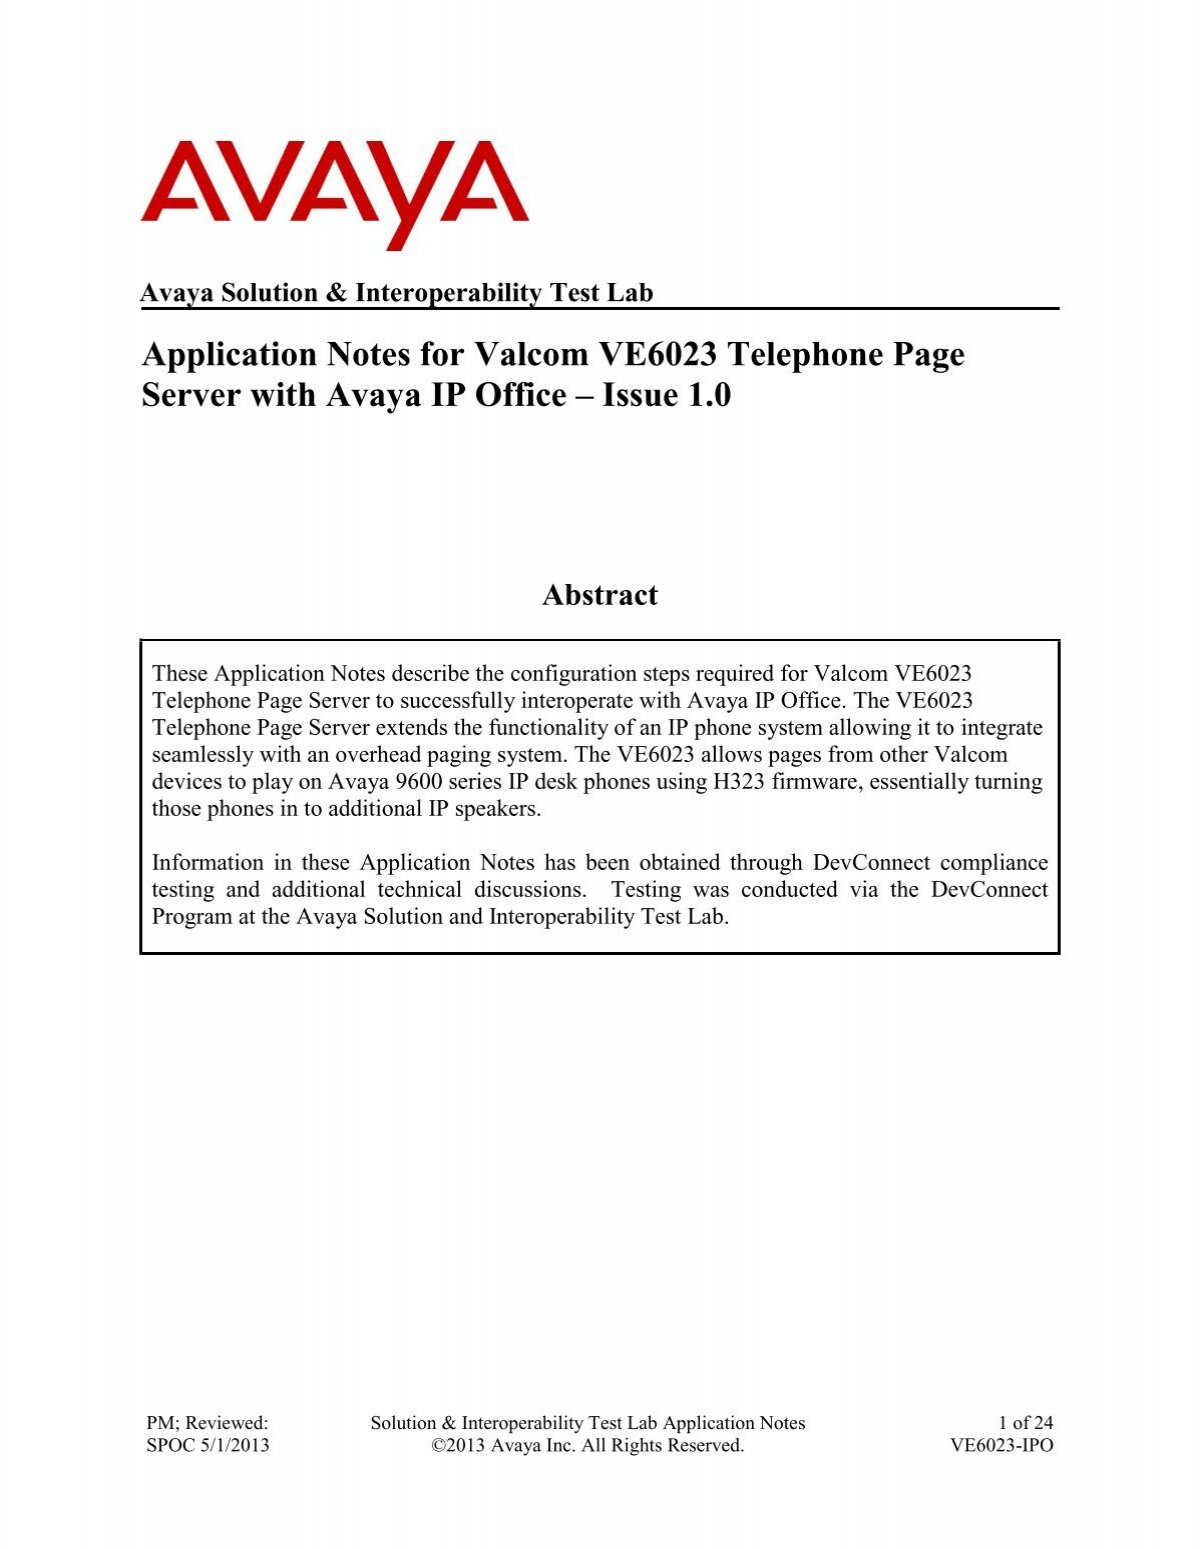 VE6023 - Avaya IP Office  - Valcom